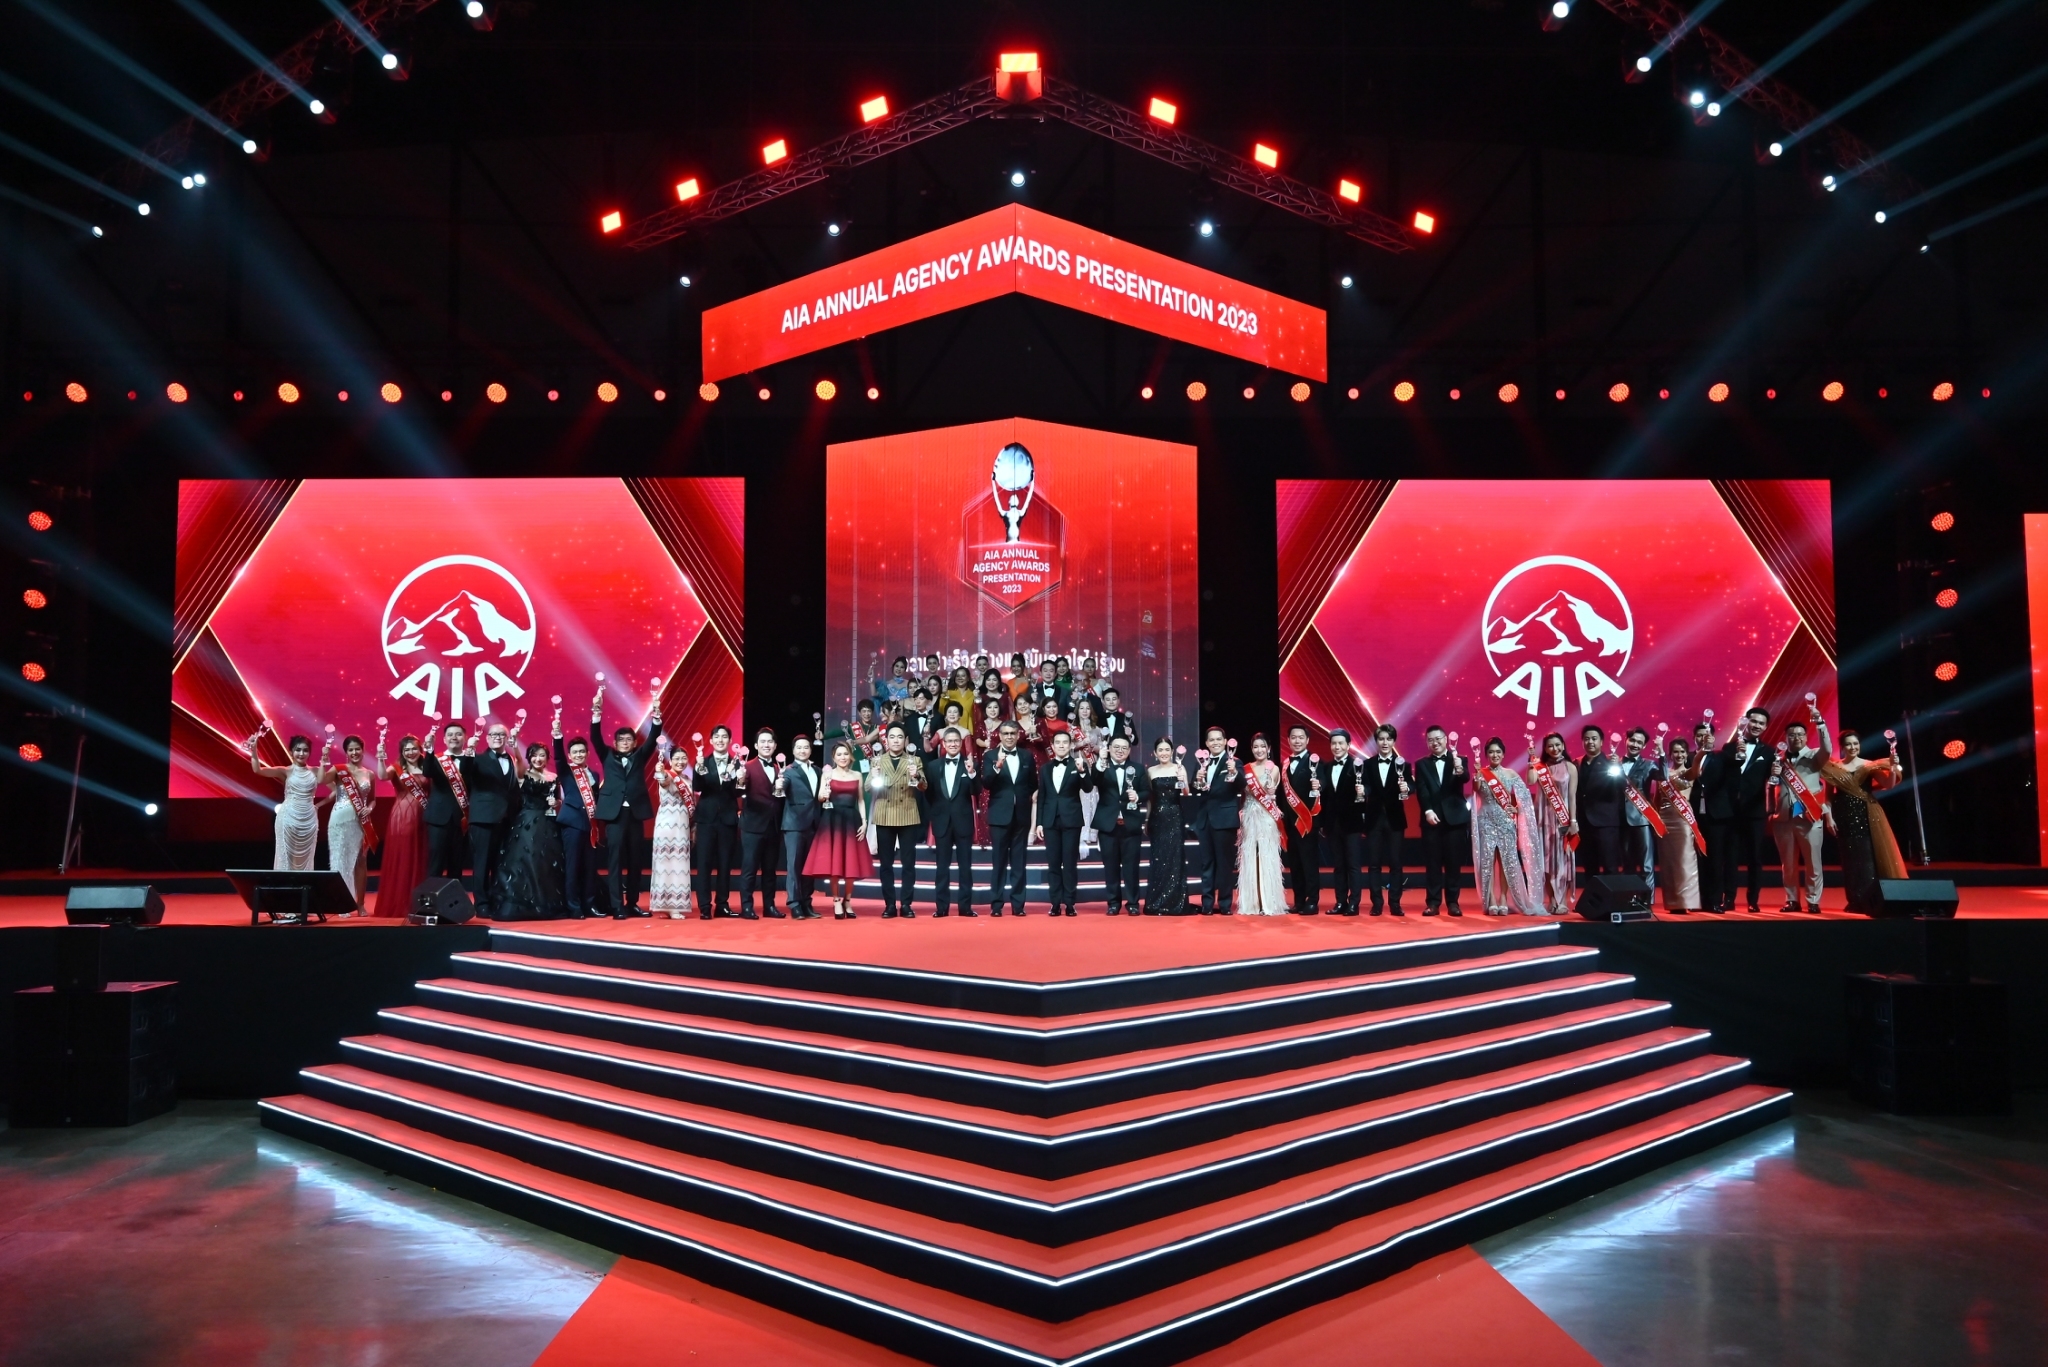 เอไอเอ ประเทศไทย มอบรางวัลเกียรติยศแก่สุดยอดตัวแทน “ที่สุดแห่งปี” ประจำปี 2566 ในงาน AIA Annual Agency Awards Presentation 2023